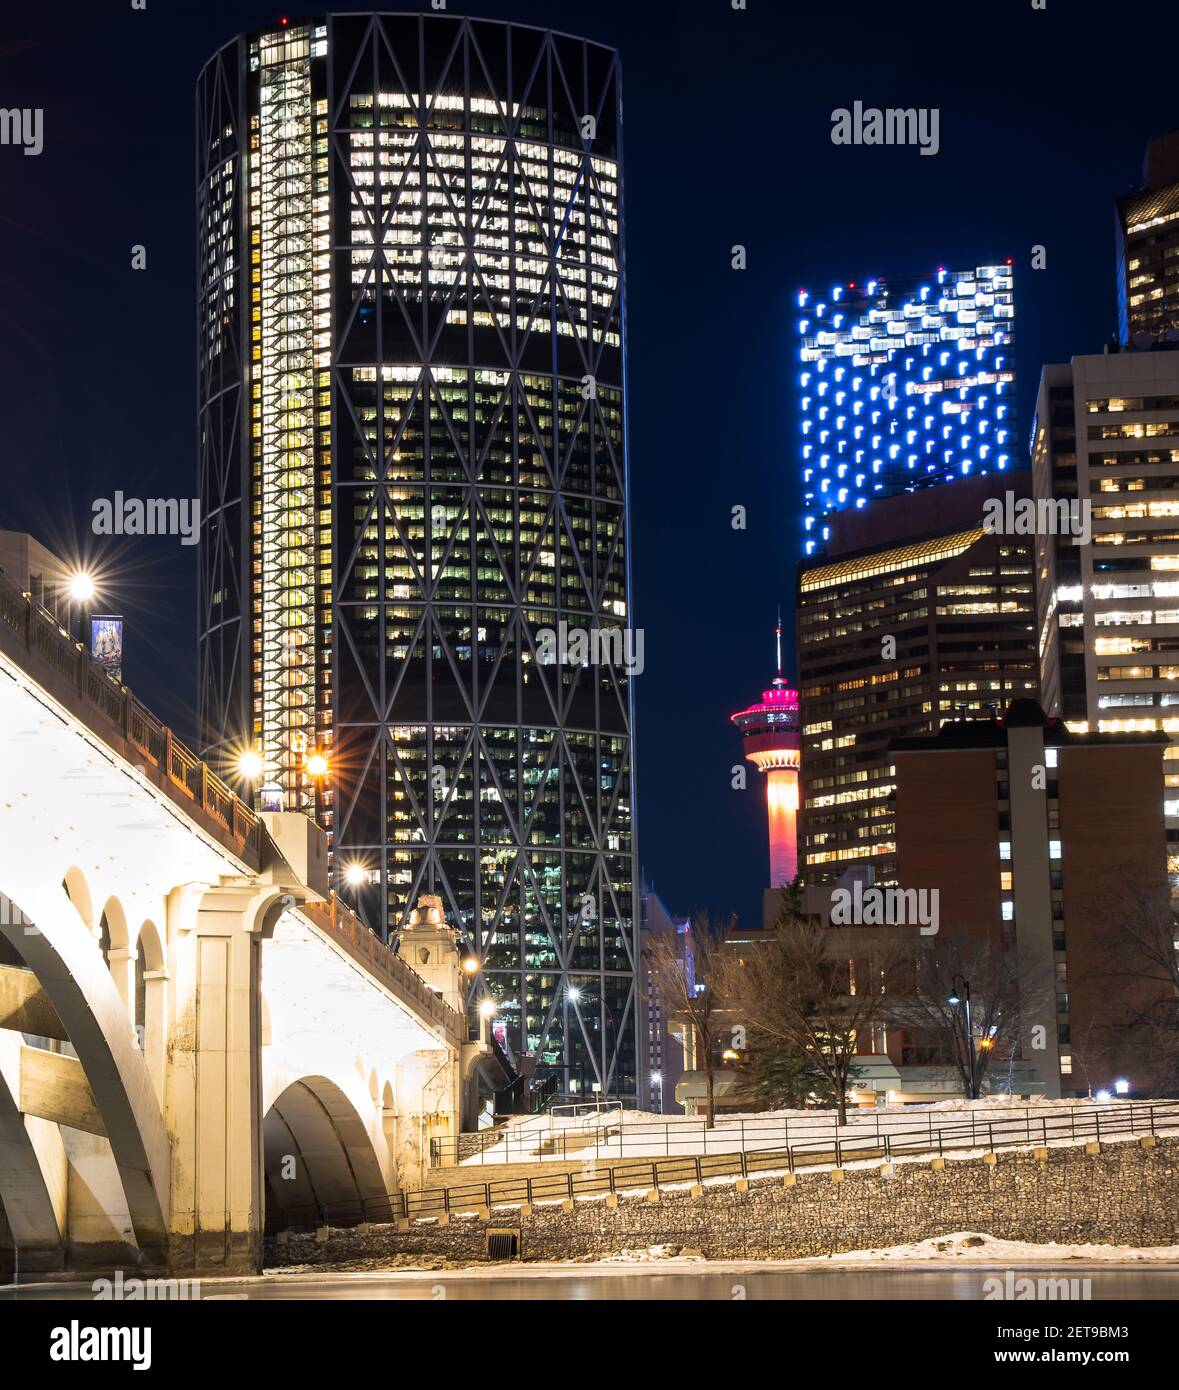 Calgary Alberta Canada, gennaio 30 2021: Una lunga esposizione fotografia di notte dei punti di riferimento del centro di una città canadese Foto Stock